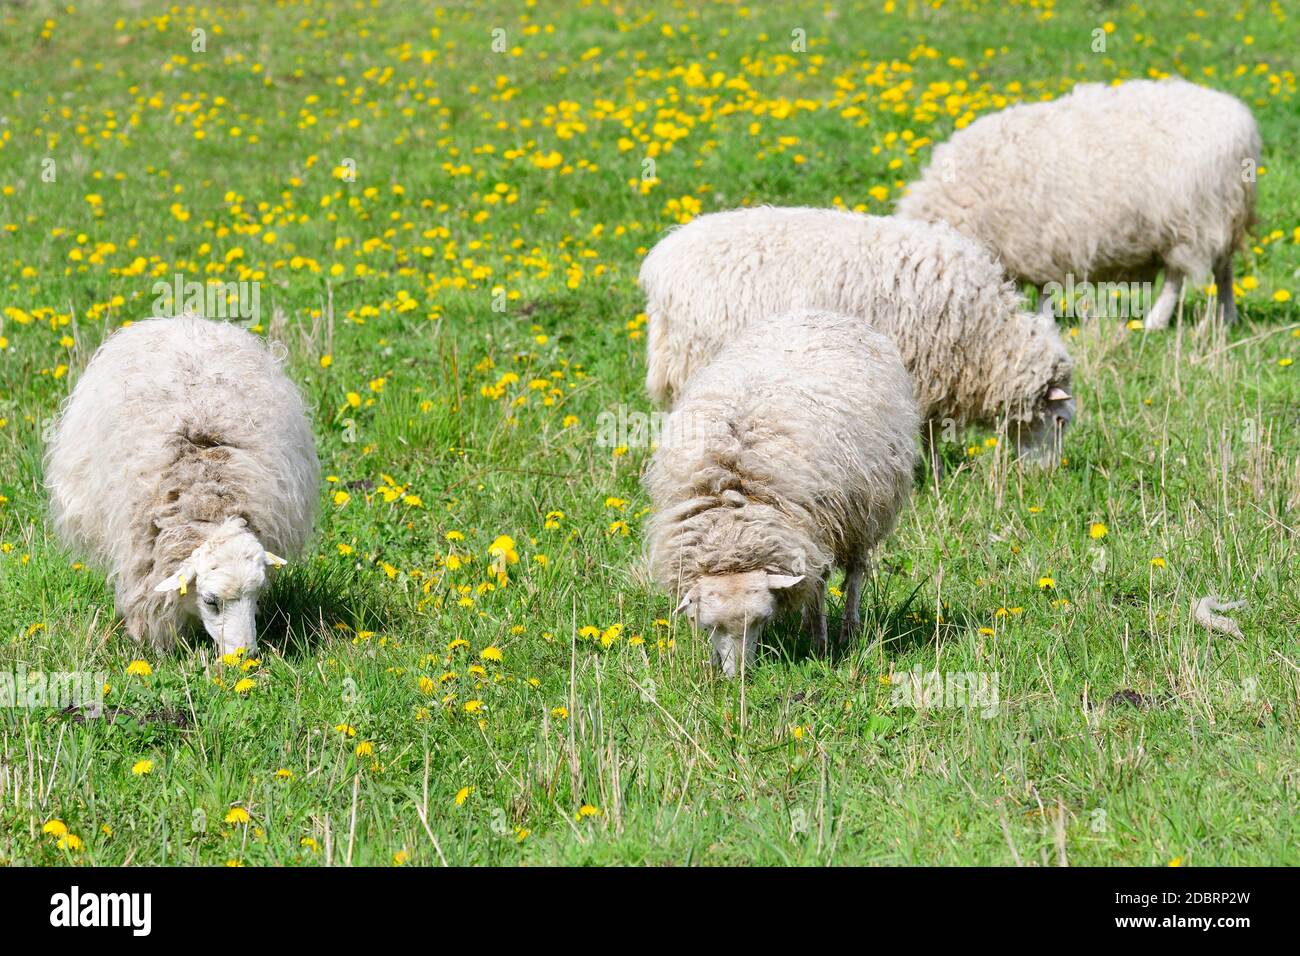 La Skudde est une race de moutons domestiqués Banque D'Images